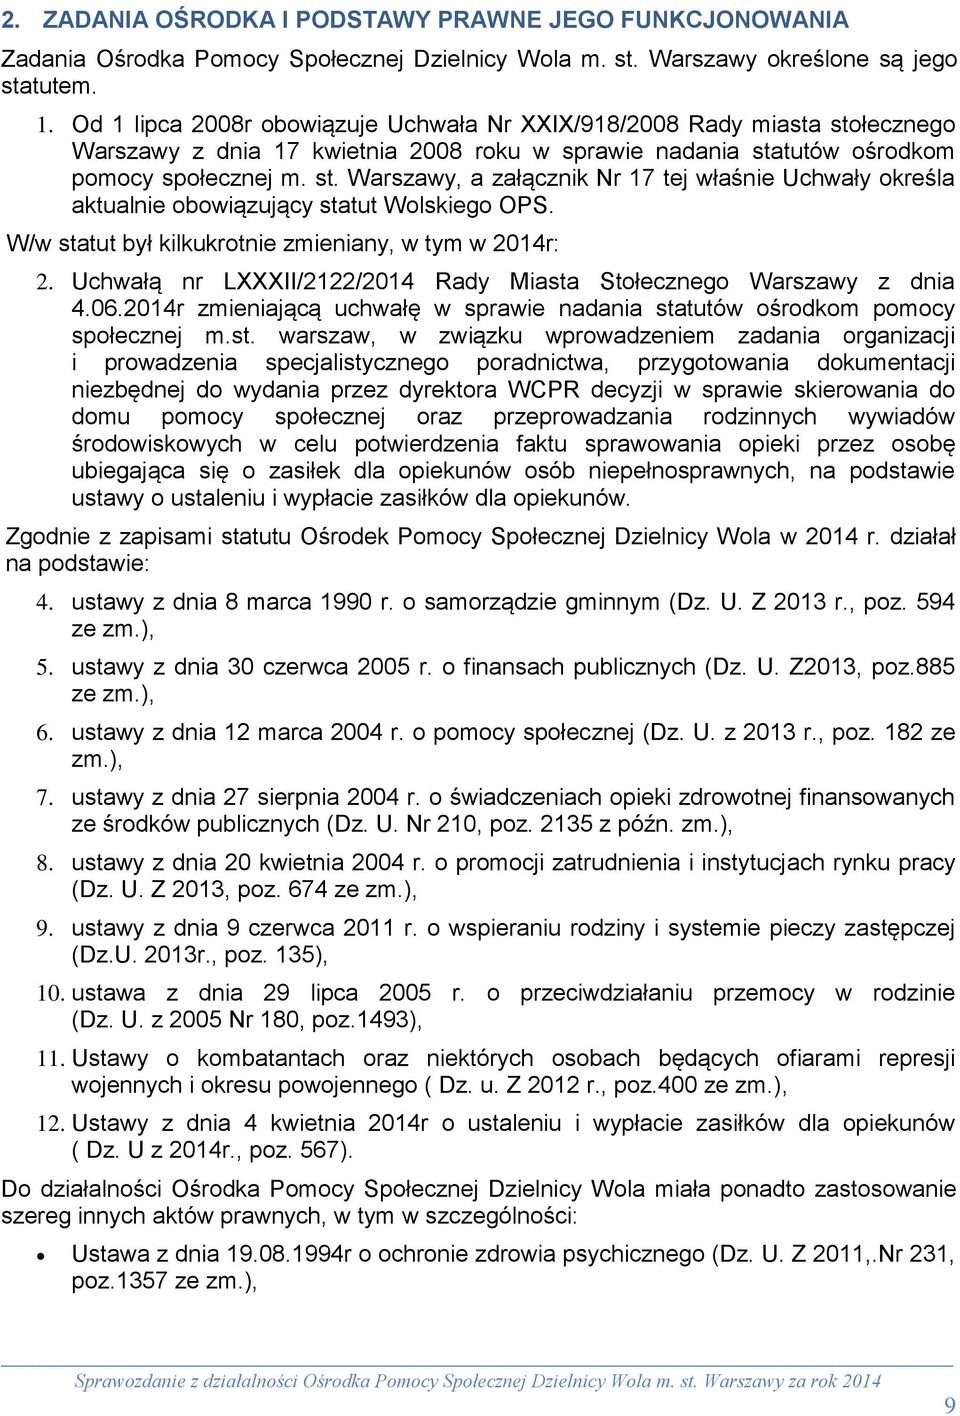 W/w statut był kilkukrotnie zmieniany, w tym w 2014r: 2. Uchwałą nr LXXXII/2122/2014 Rady Miasta Stołecznego Warszawy z dnia 4.06.